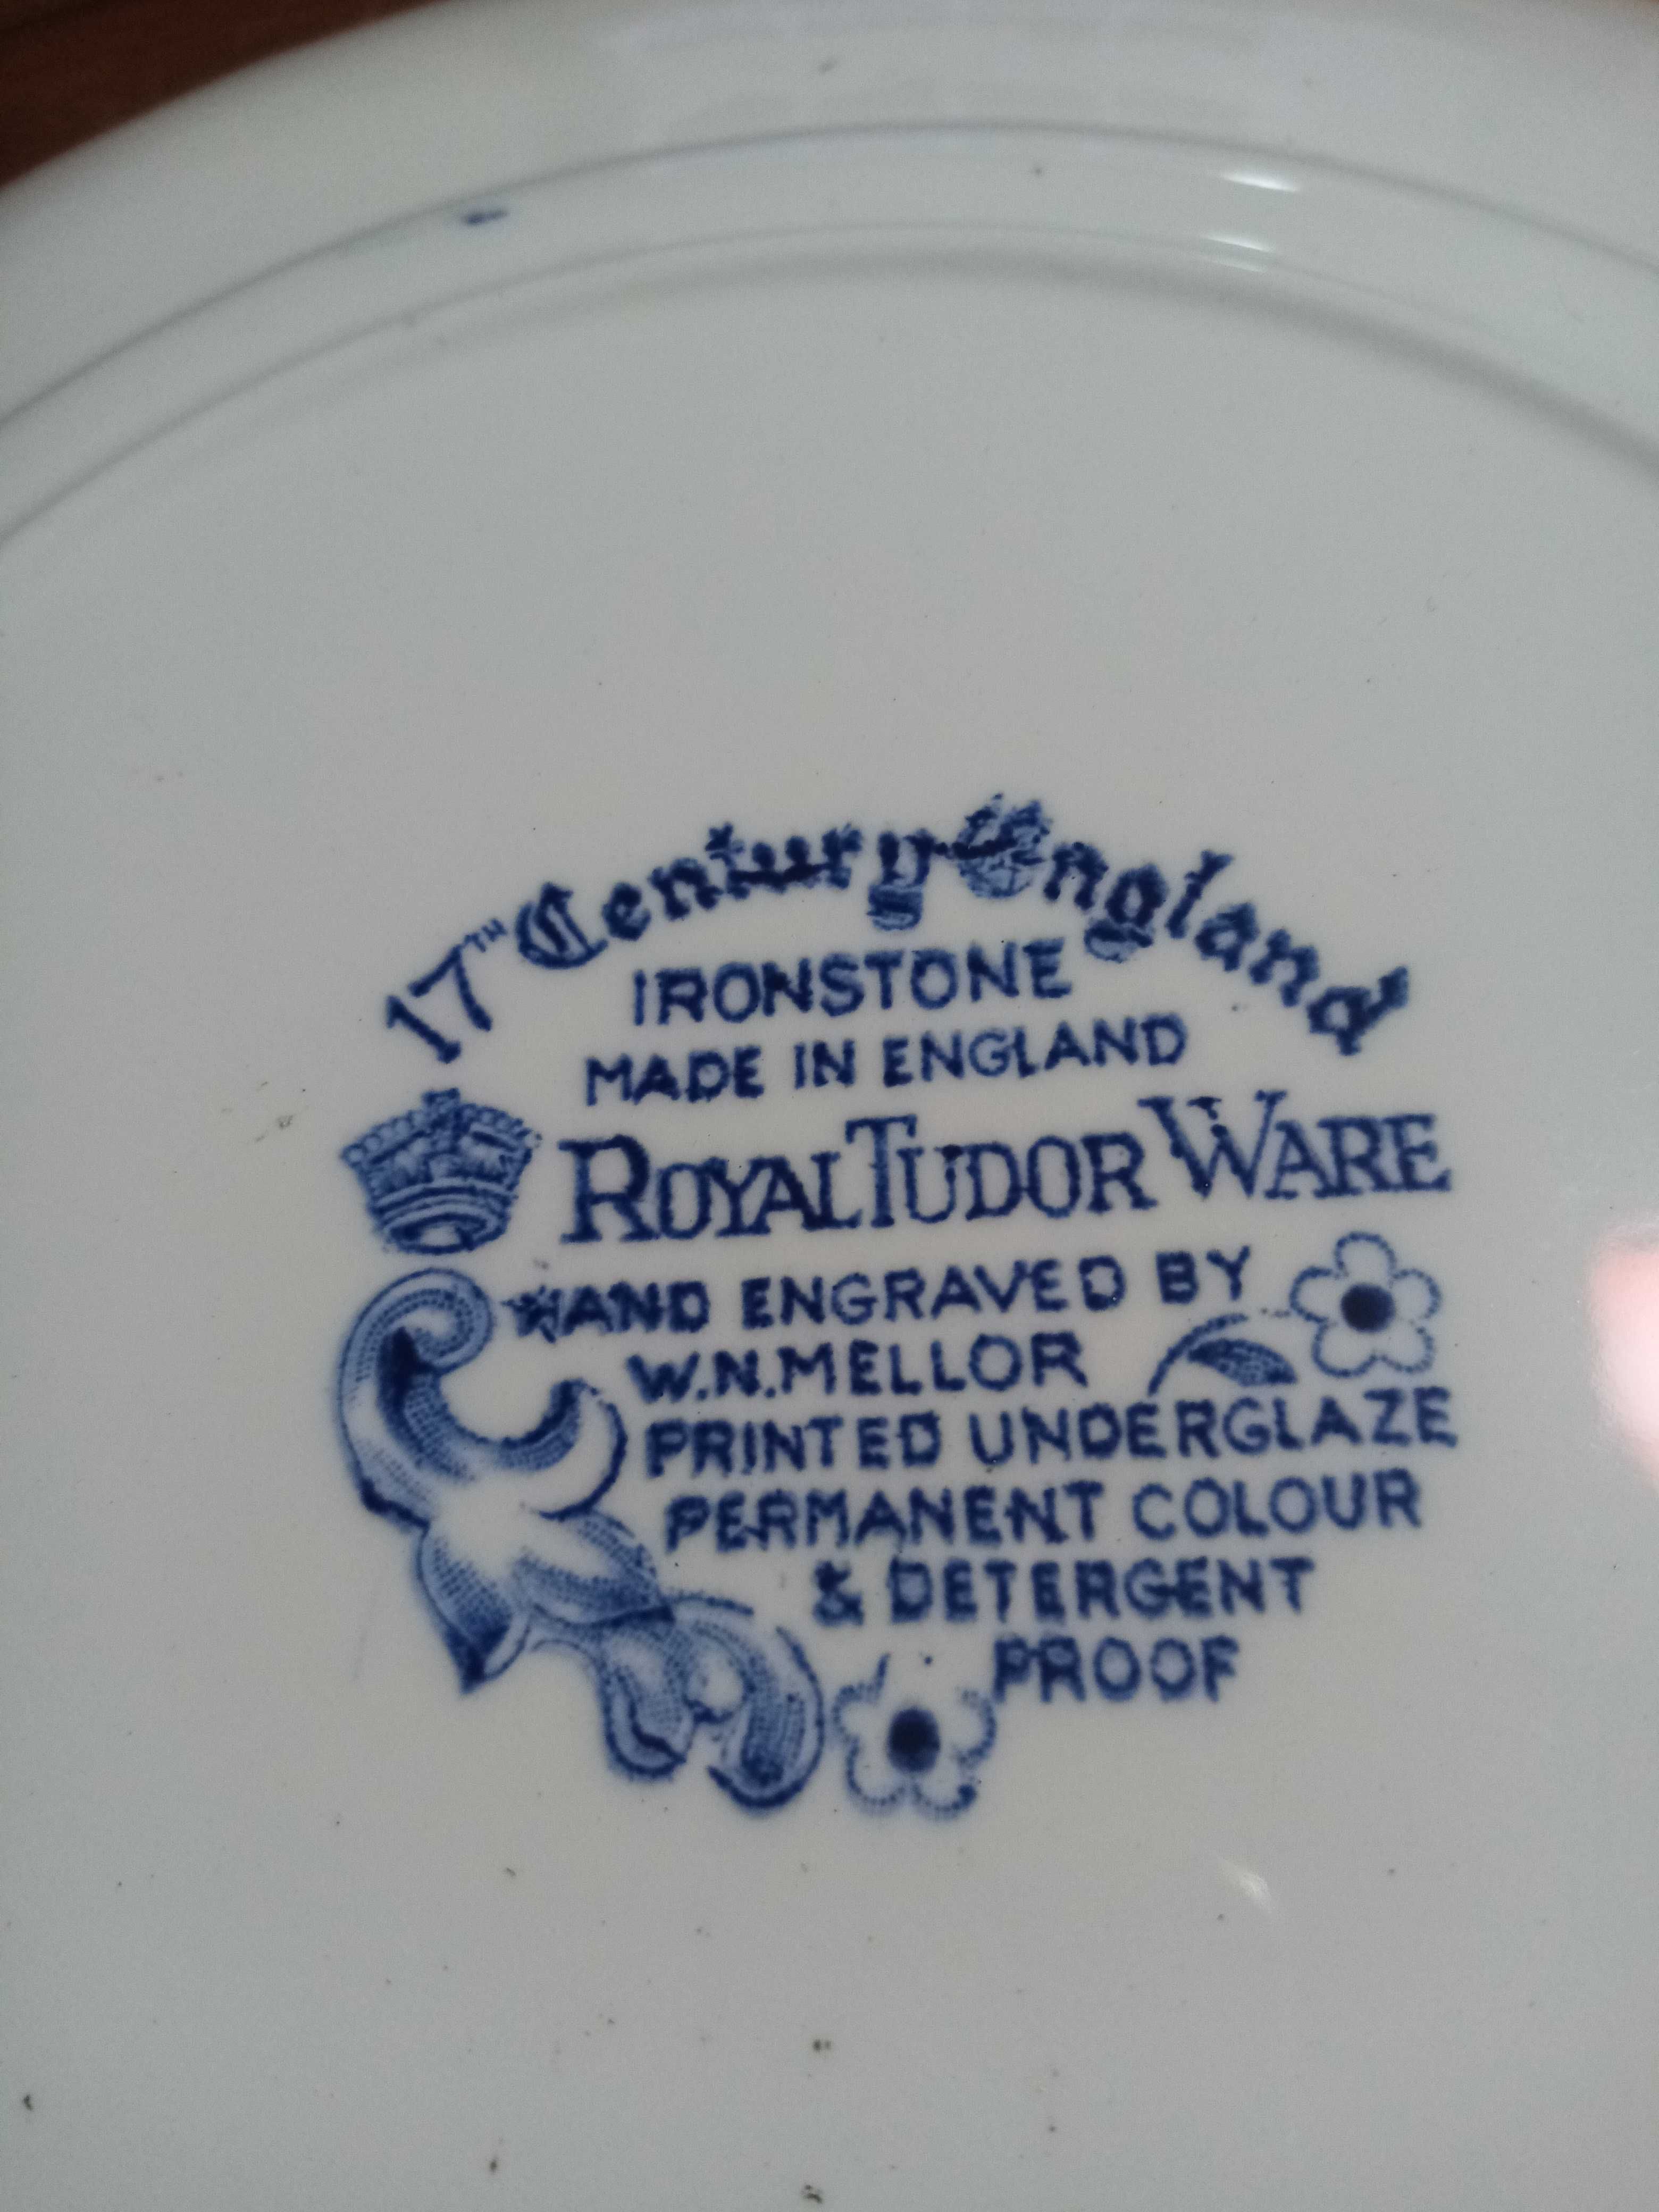 3 Pratos Porcelana Royal Tudor Ware